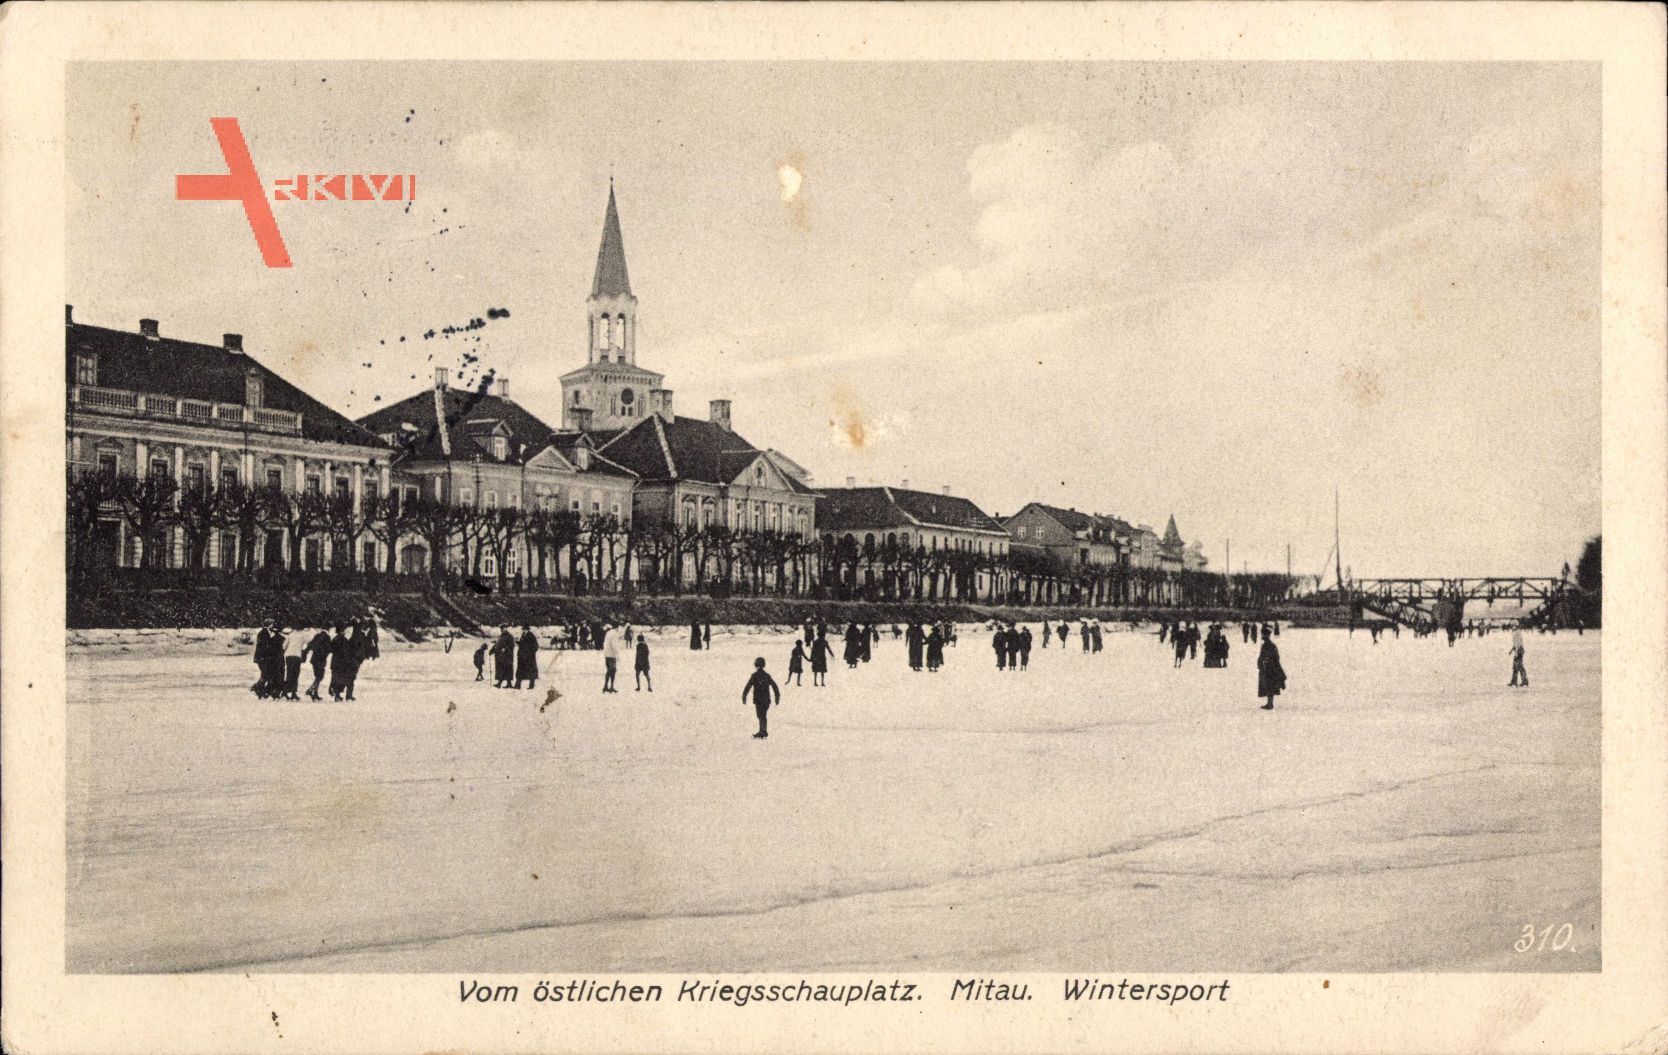 Jelgava Mitau Lettland, Vom östlichen Kriegsschauplatz, Wintersport,Eislaufen